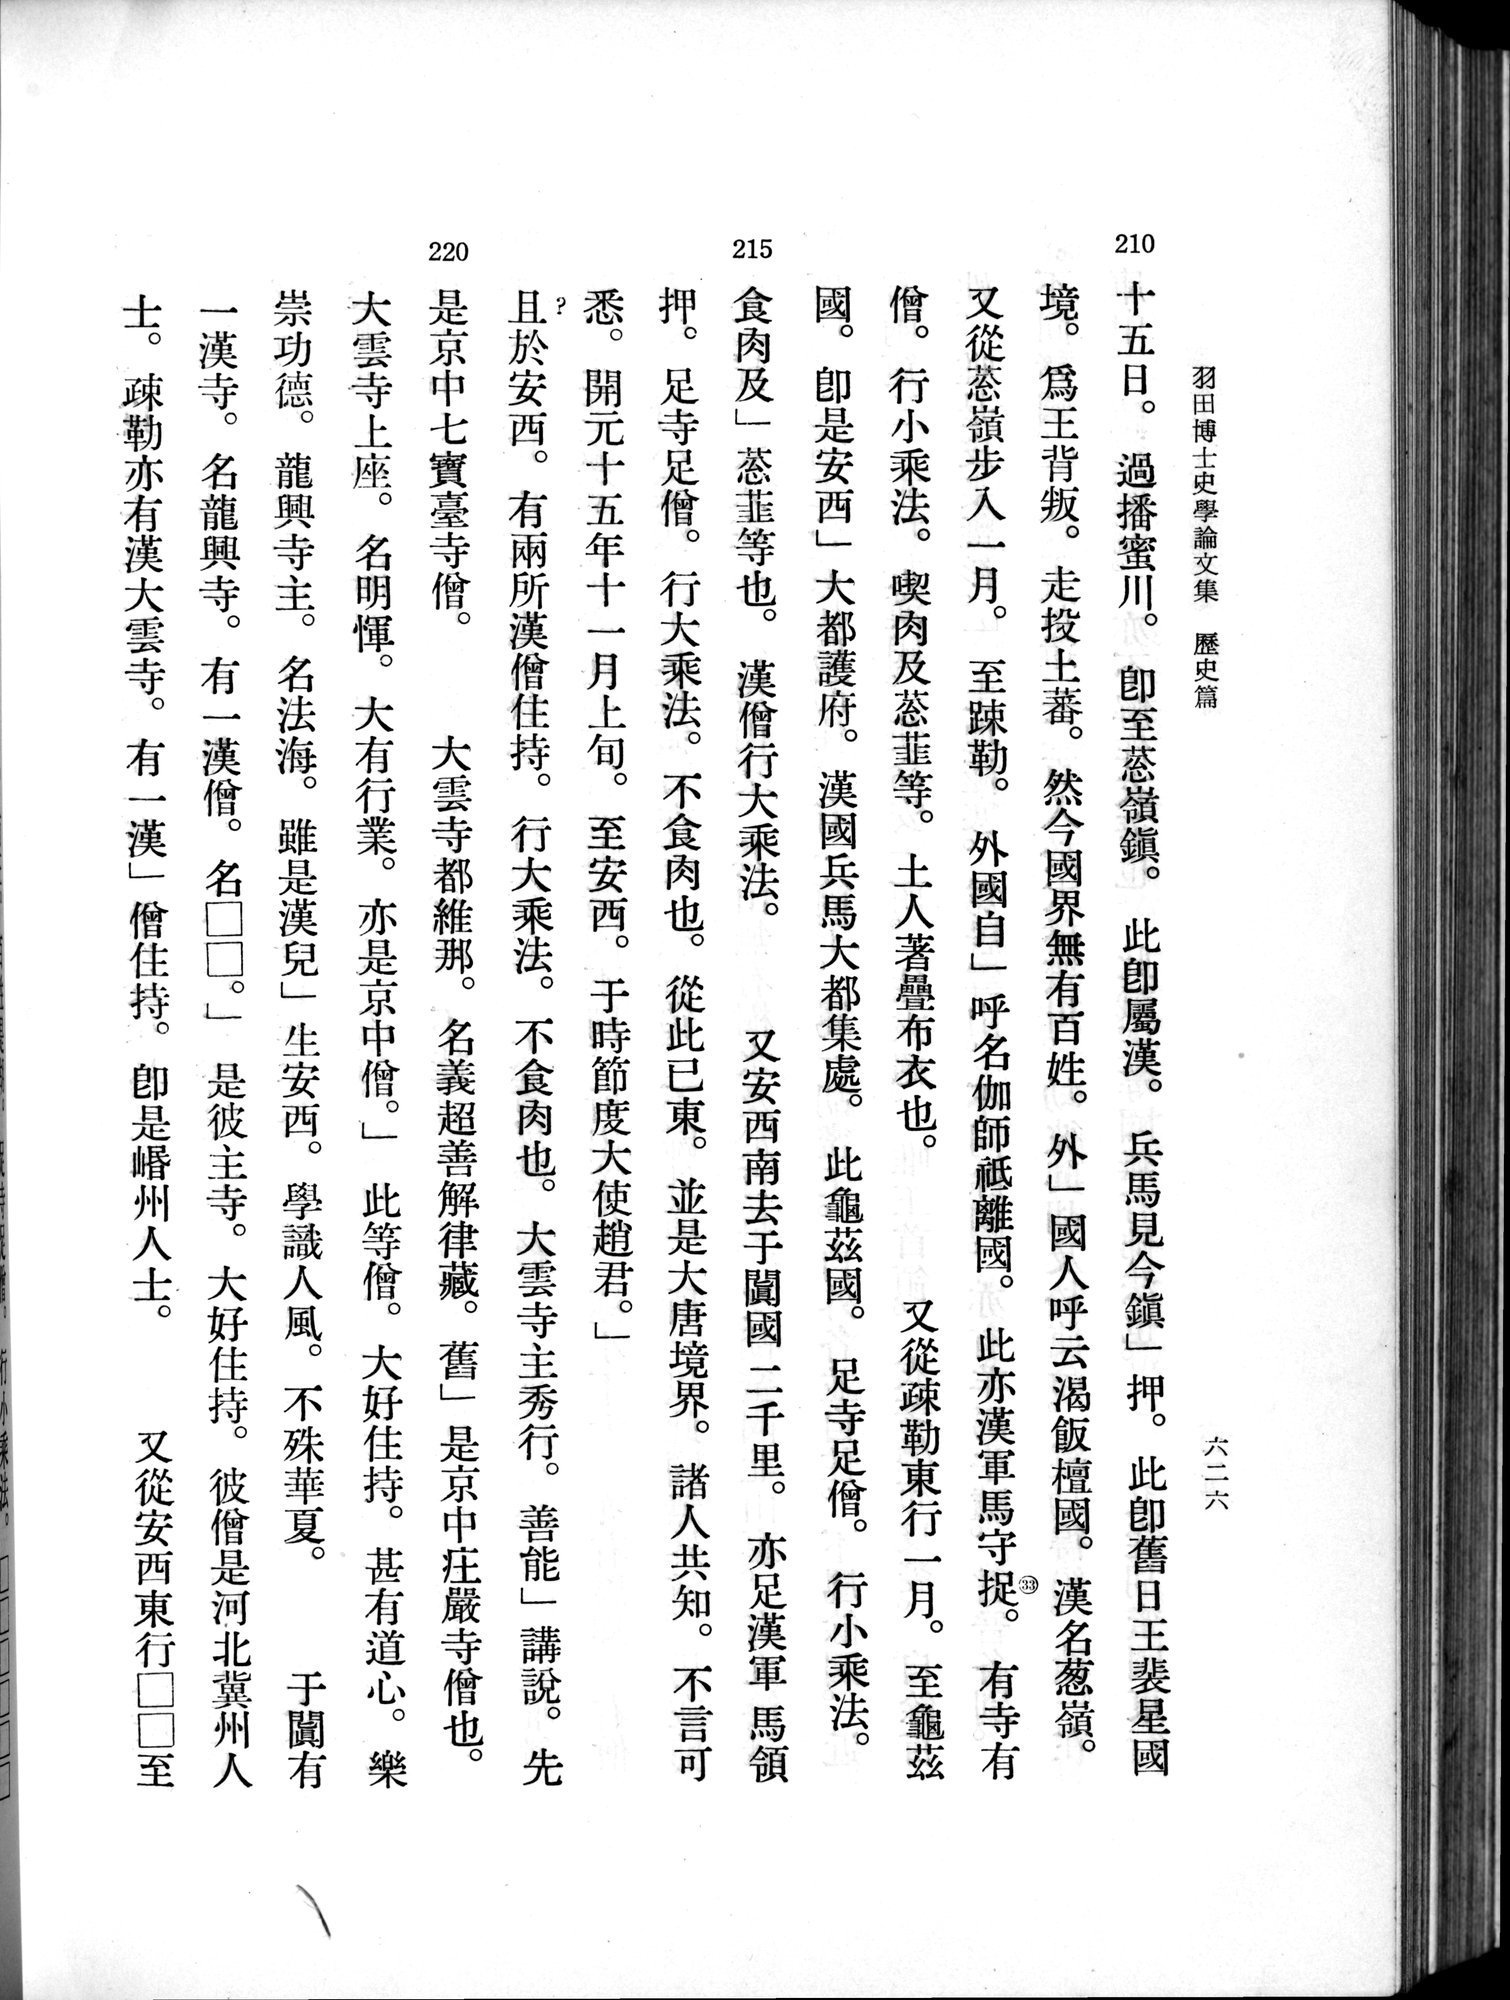 羽田博士史学論文集 : vol.1 / 664 ページ（白黒高解像度画像）